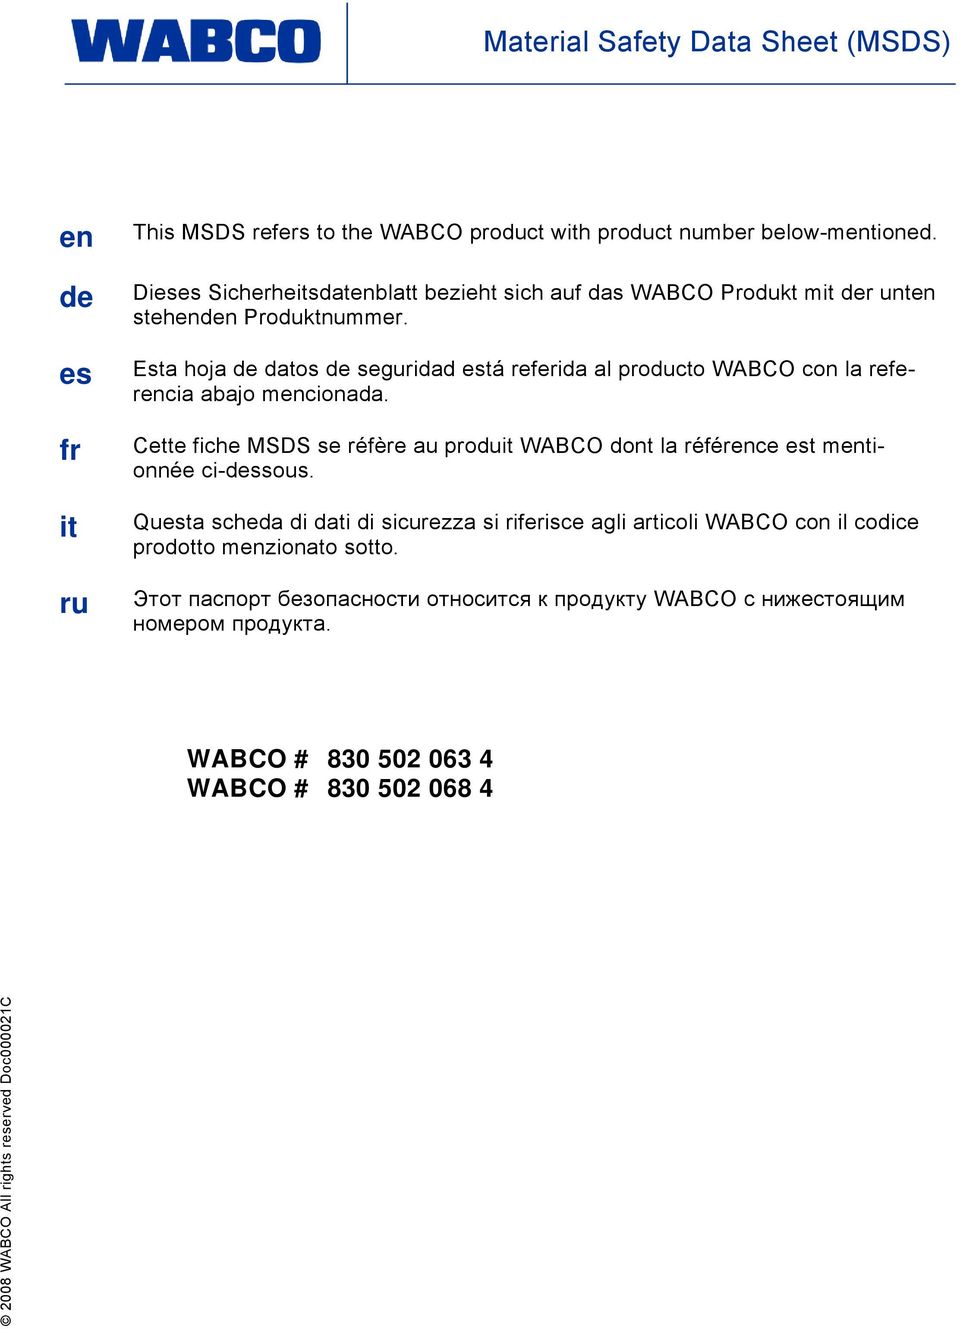 Esta hoja de datos de seguridad está referida al producto WABCO con la referencia abajo mencionada.